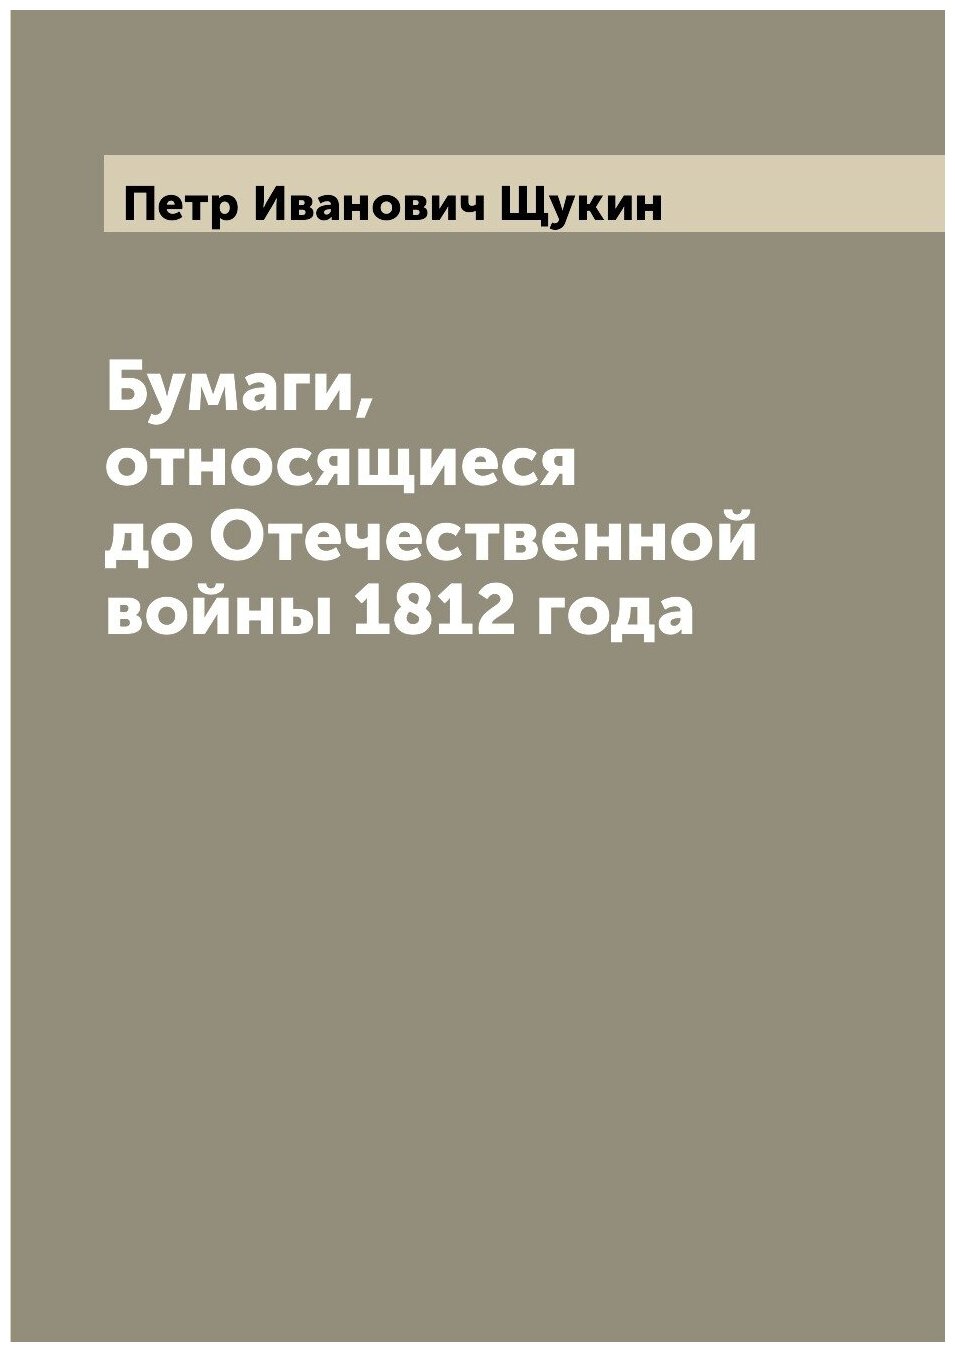 Бумаги, относящиеся до Отечественной войны 1812 года